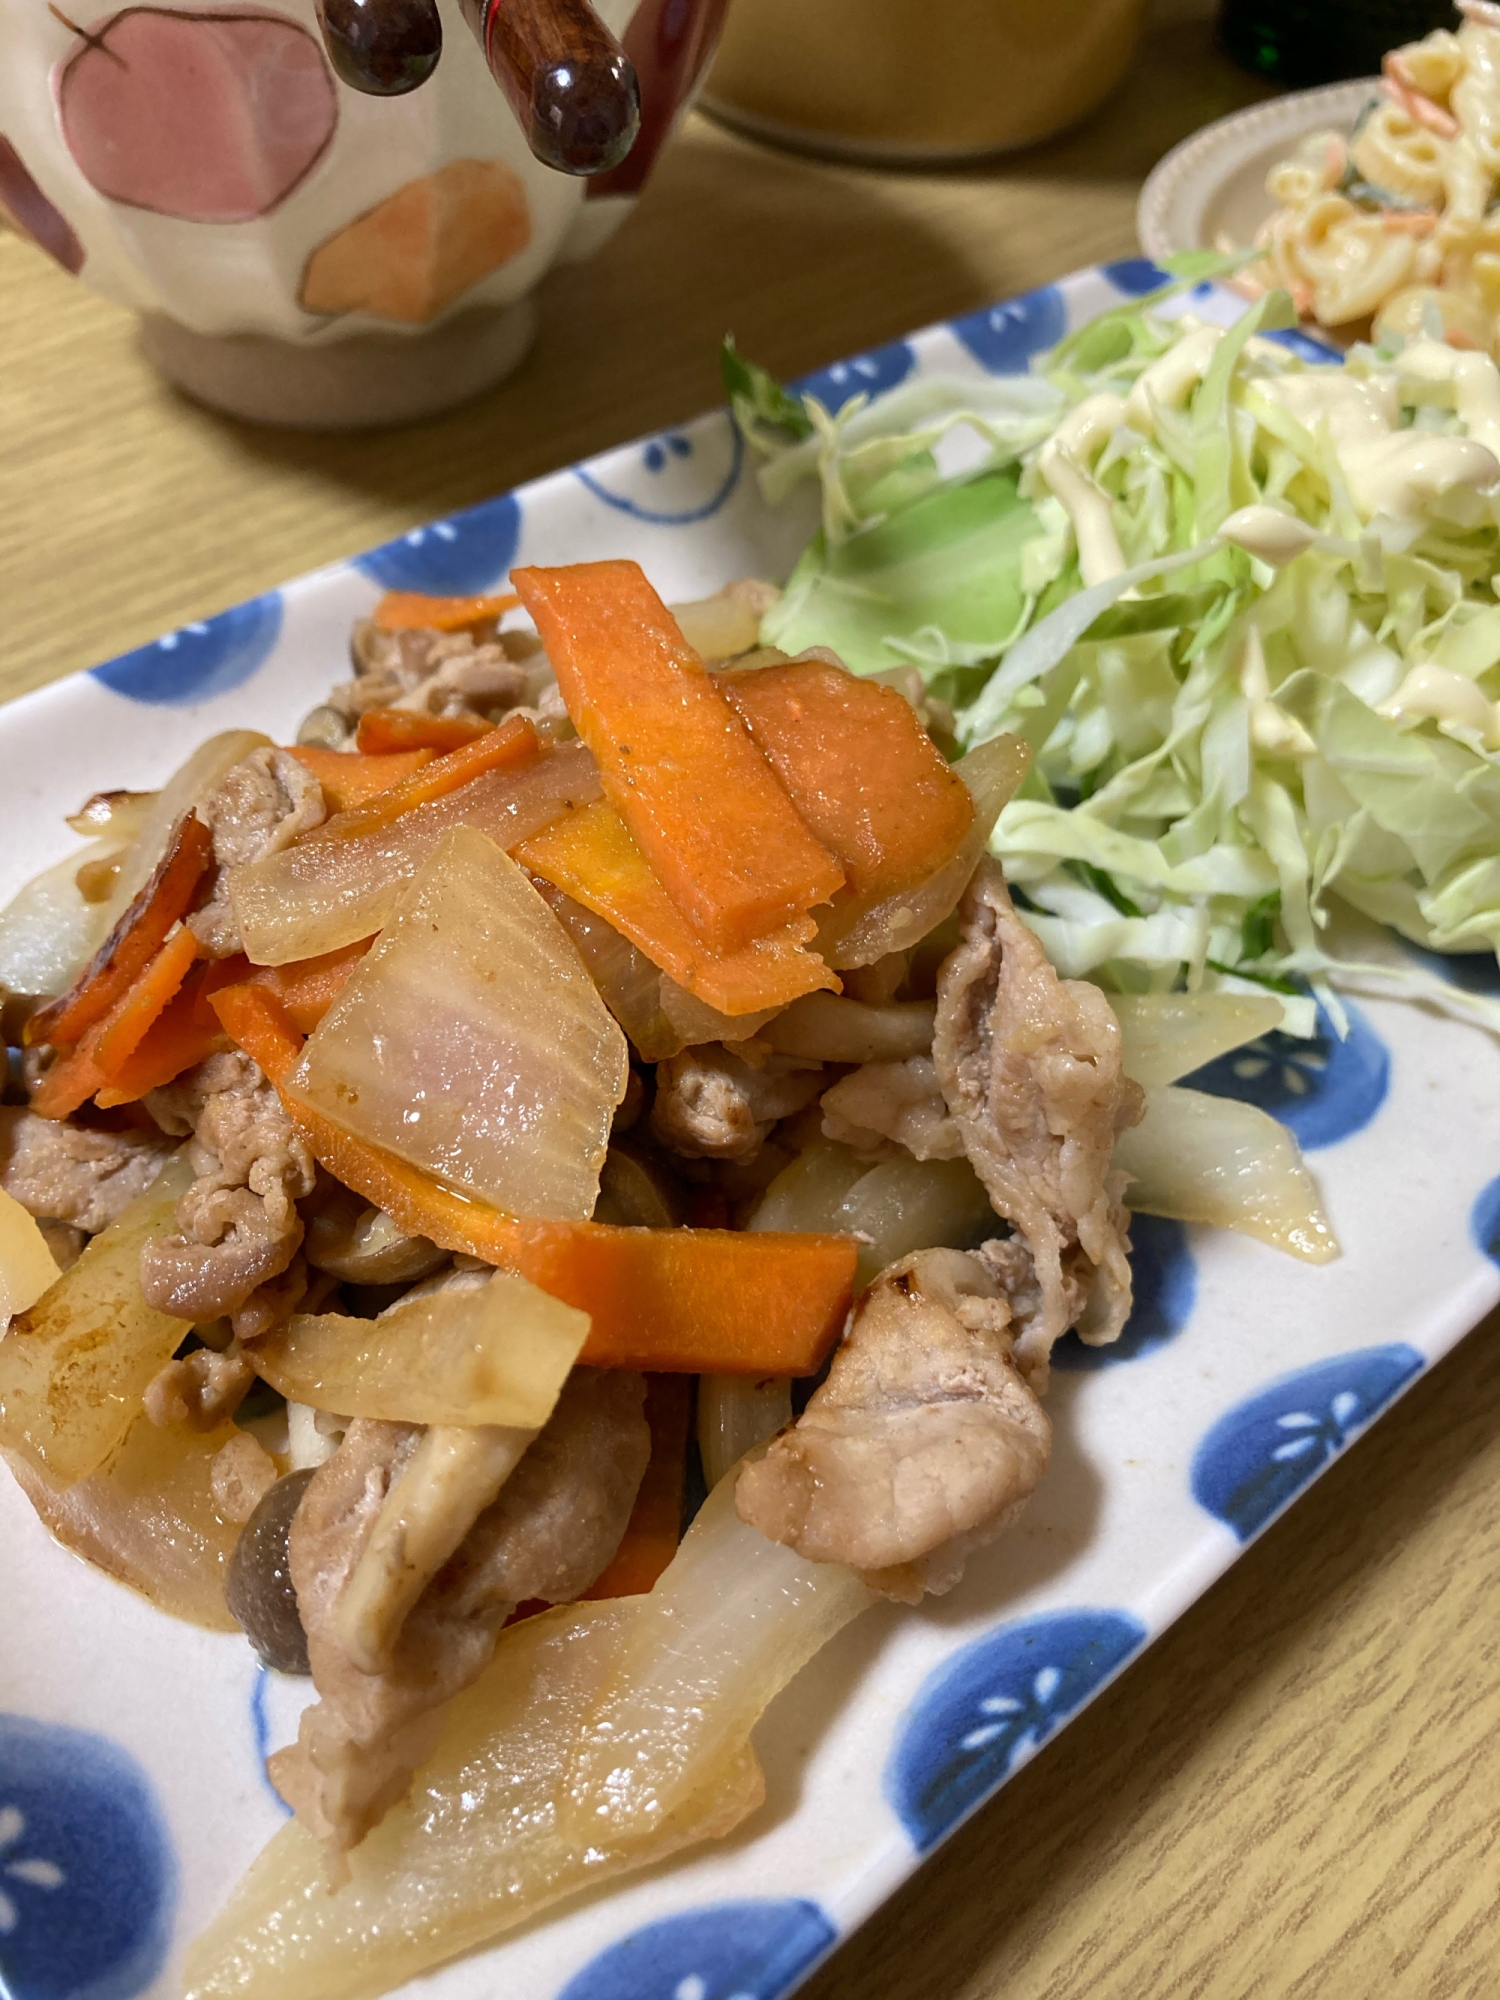 【我が家の定番】野菜たっぷり生姜焼き